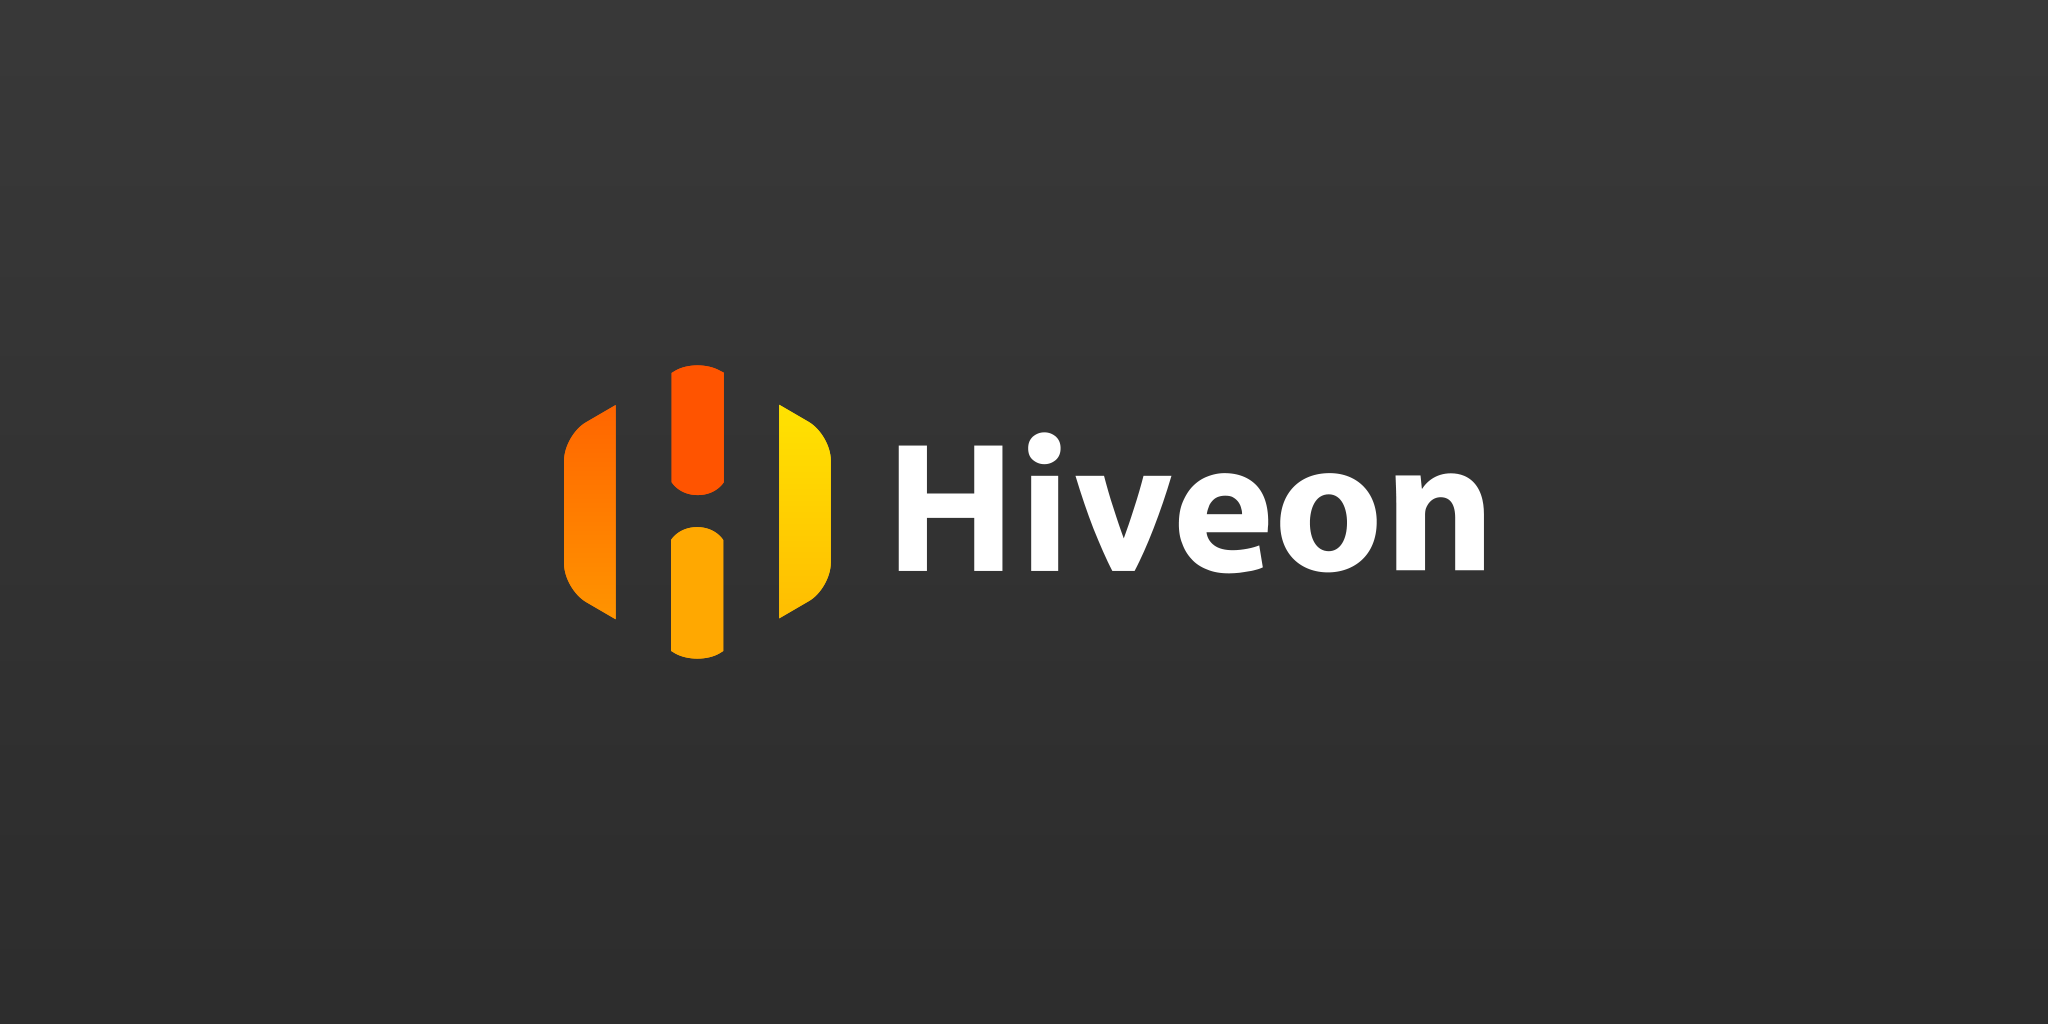 Hiveon